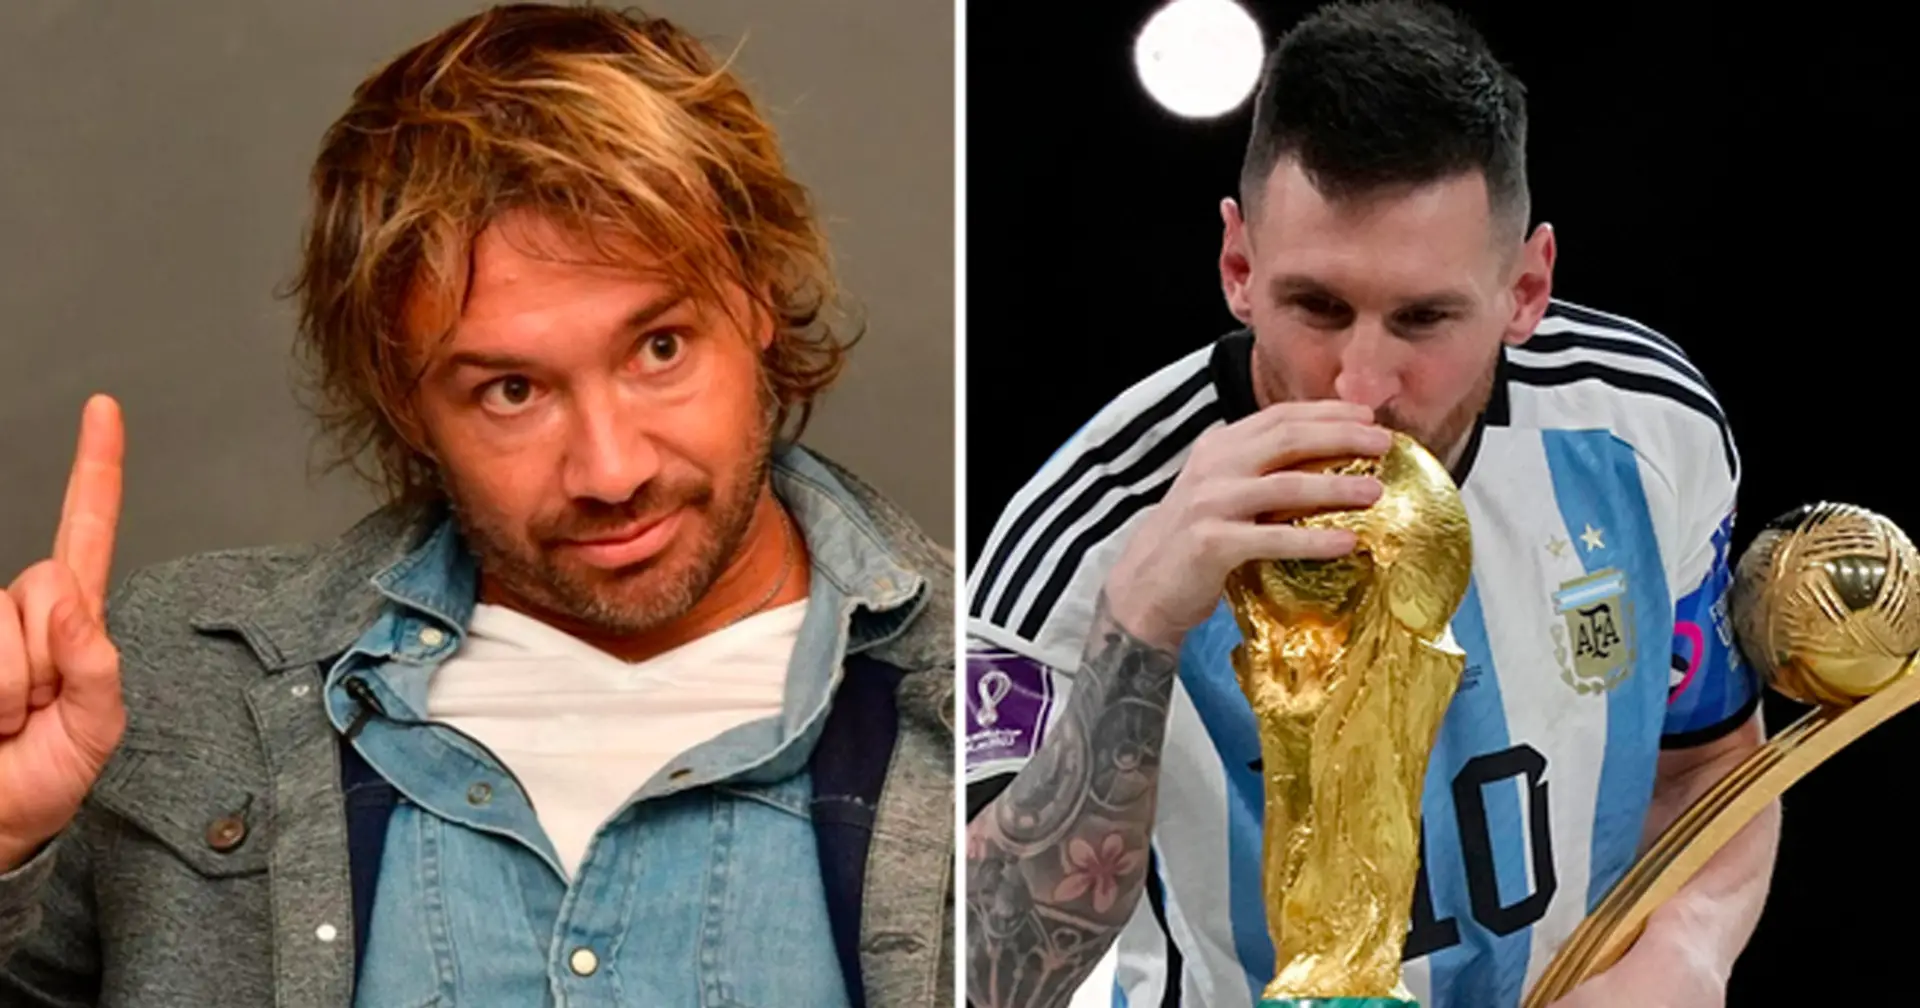 "La FIFA a aidé l'Argentine à devenir championne du monde. Ils voulaient promouvoir Messi'': l'ancien joueur uruguayen Lugano